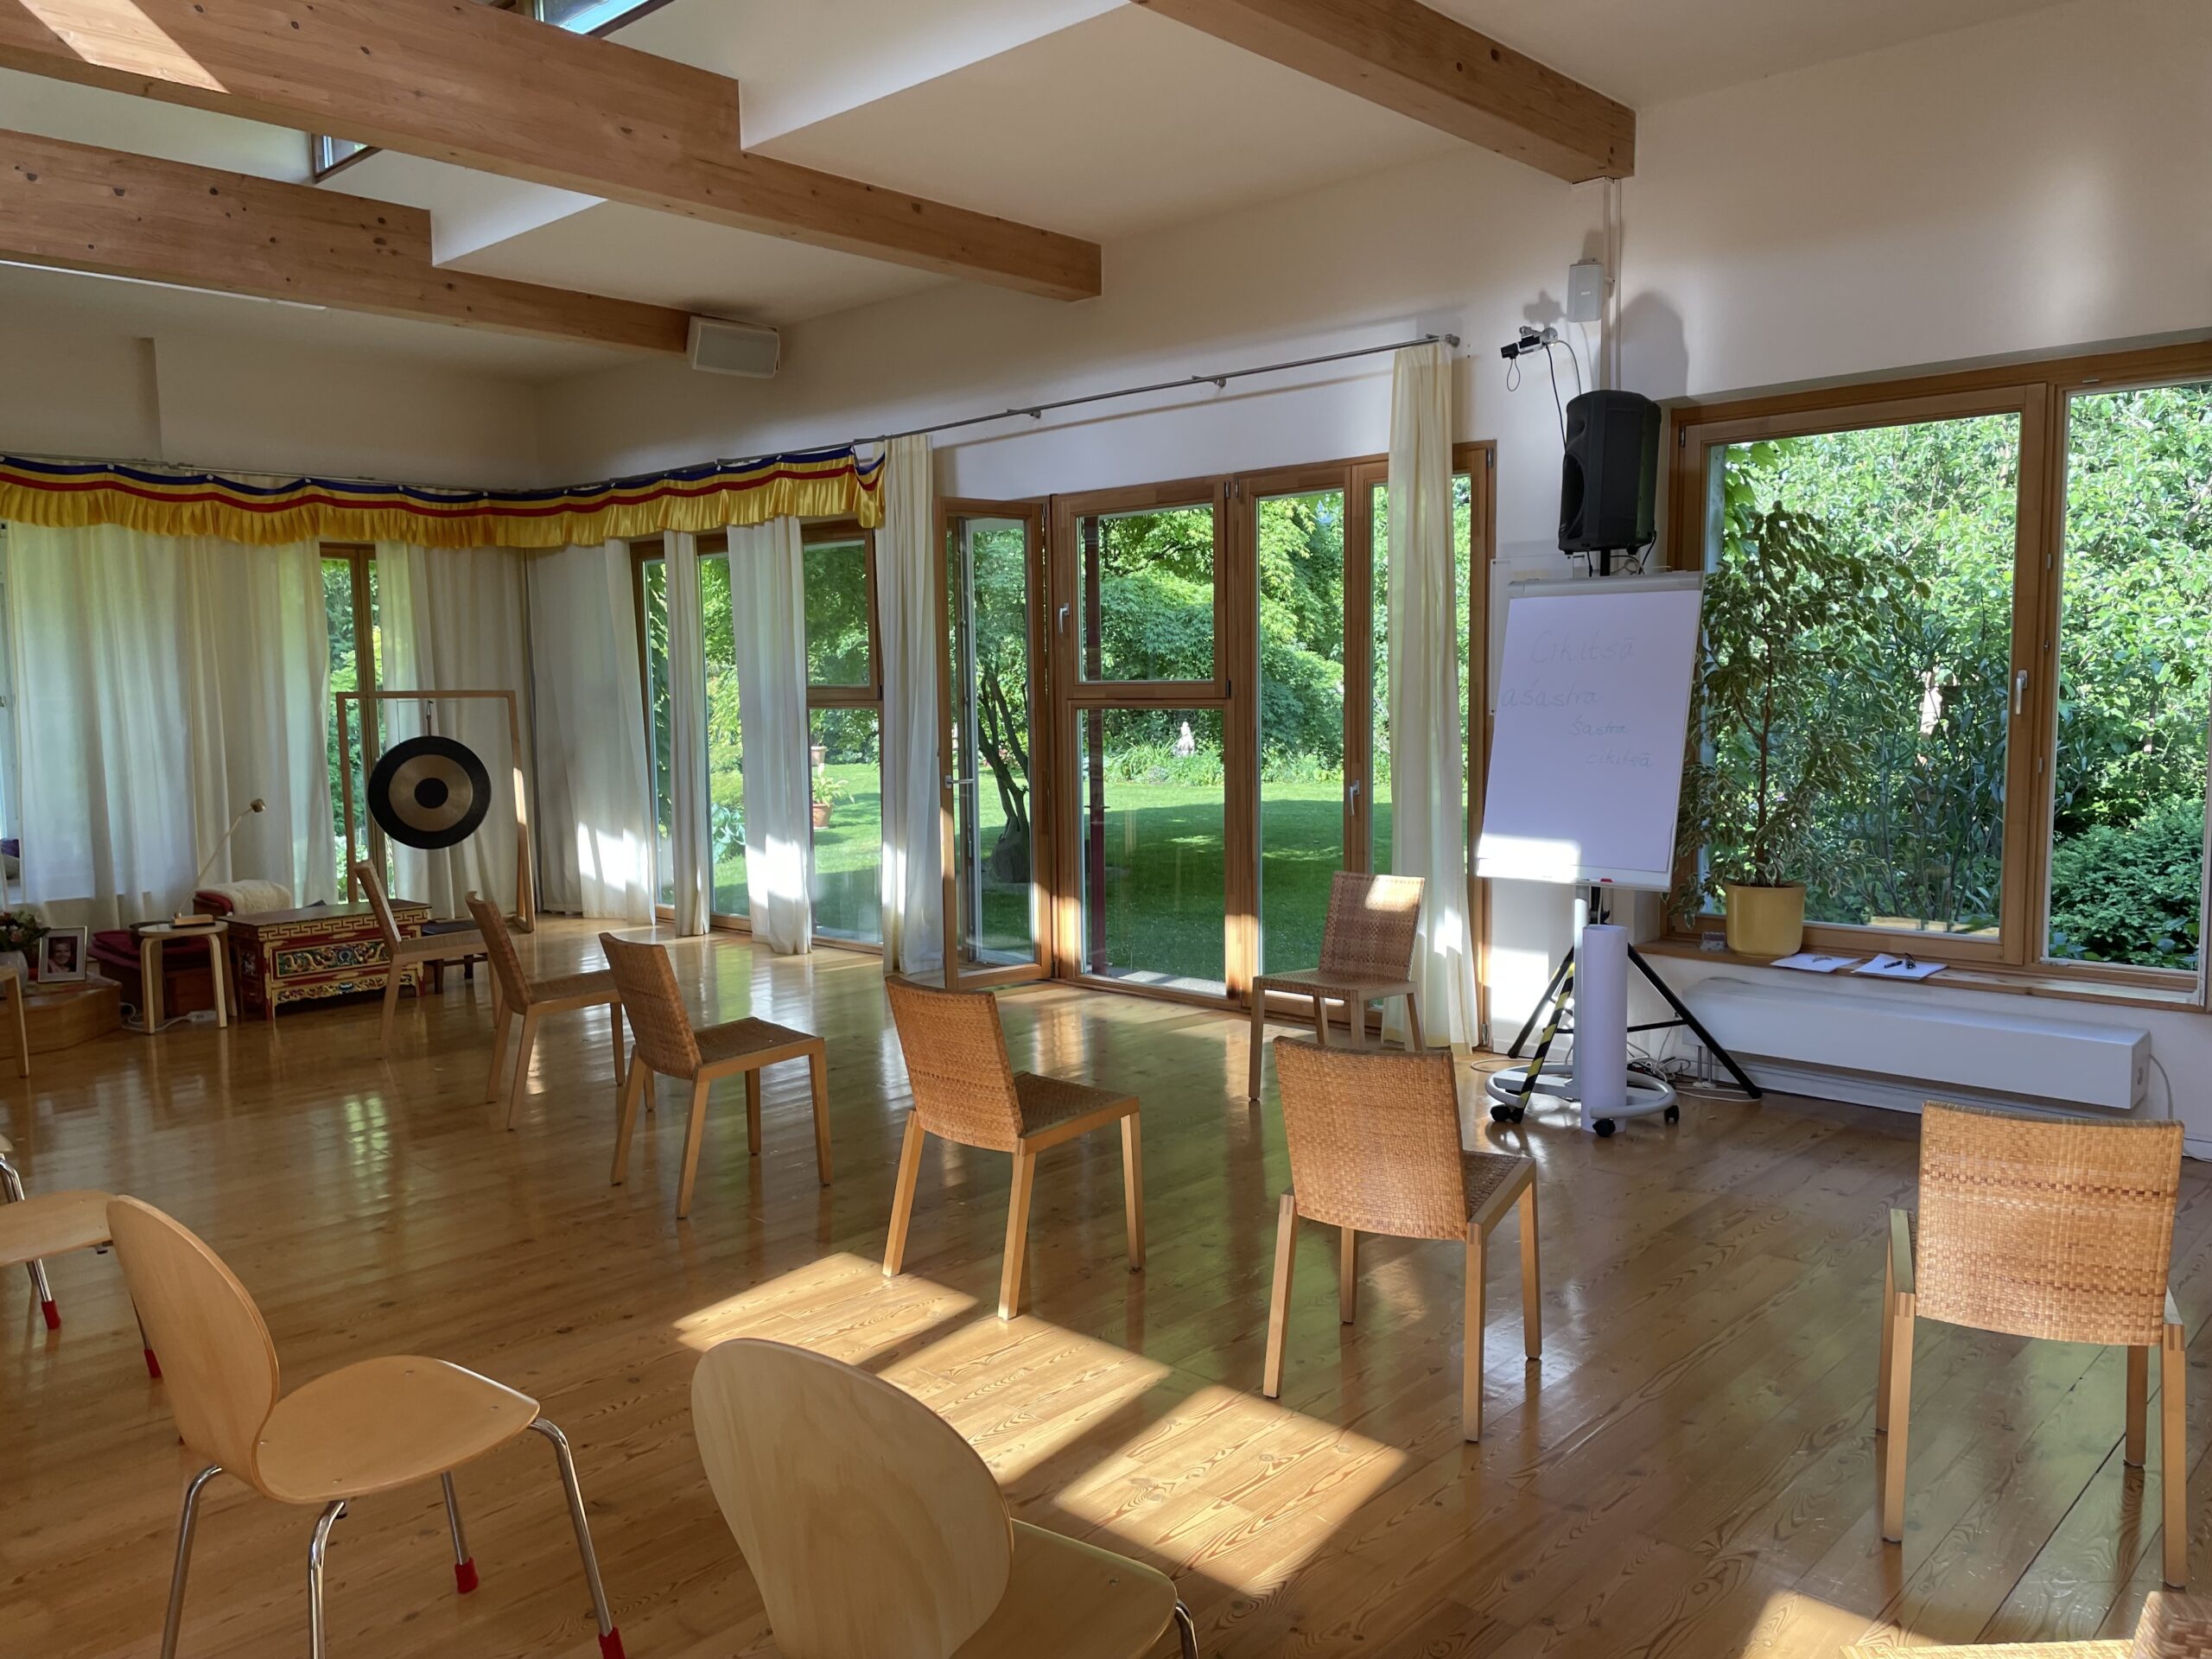 Yogatherapie Ausbildung in Berlin mit Sriram